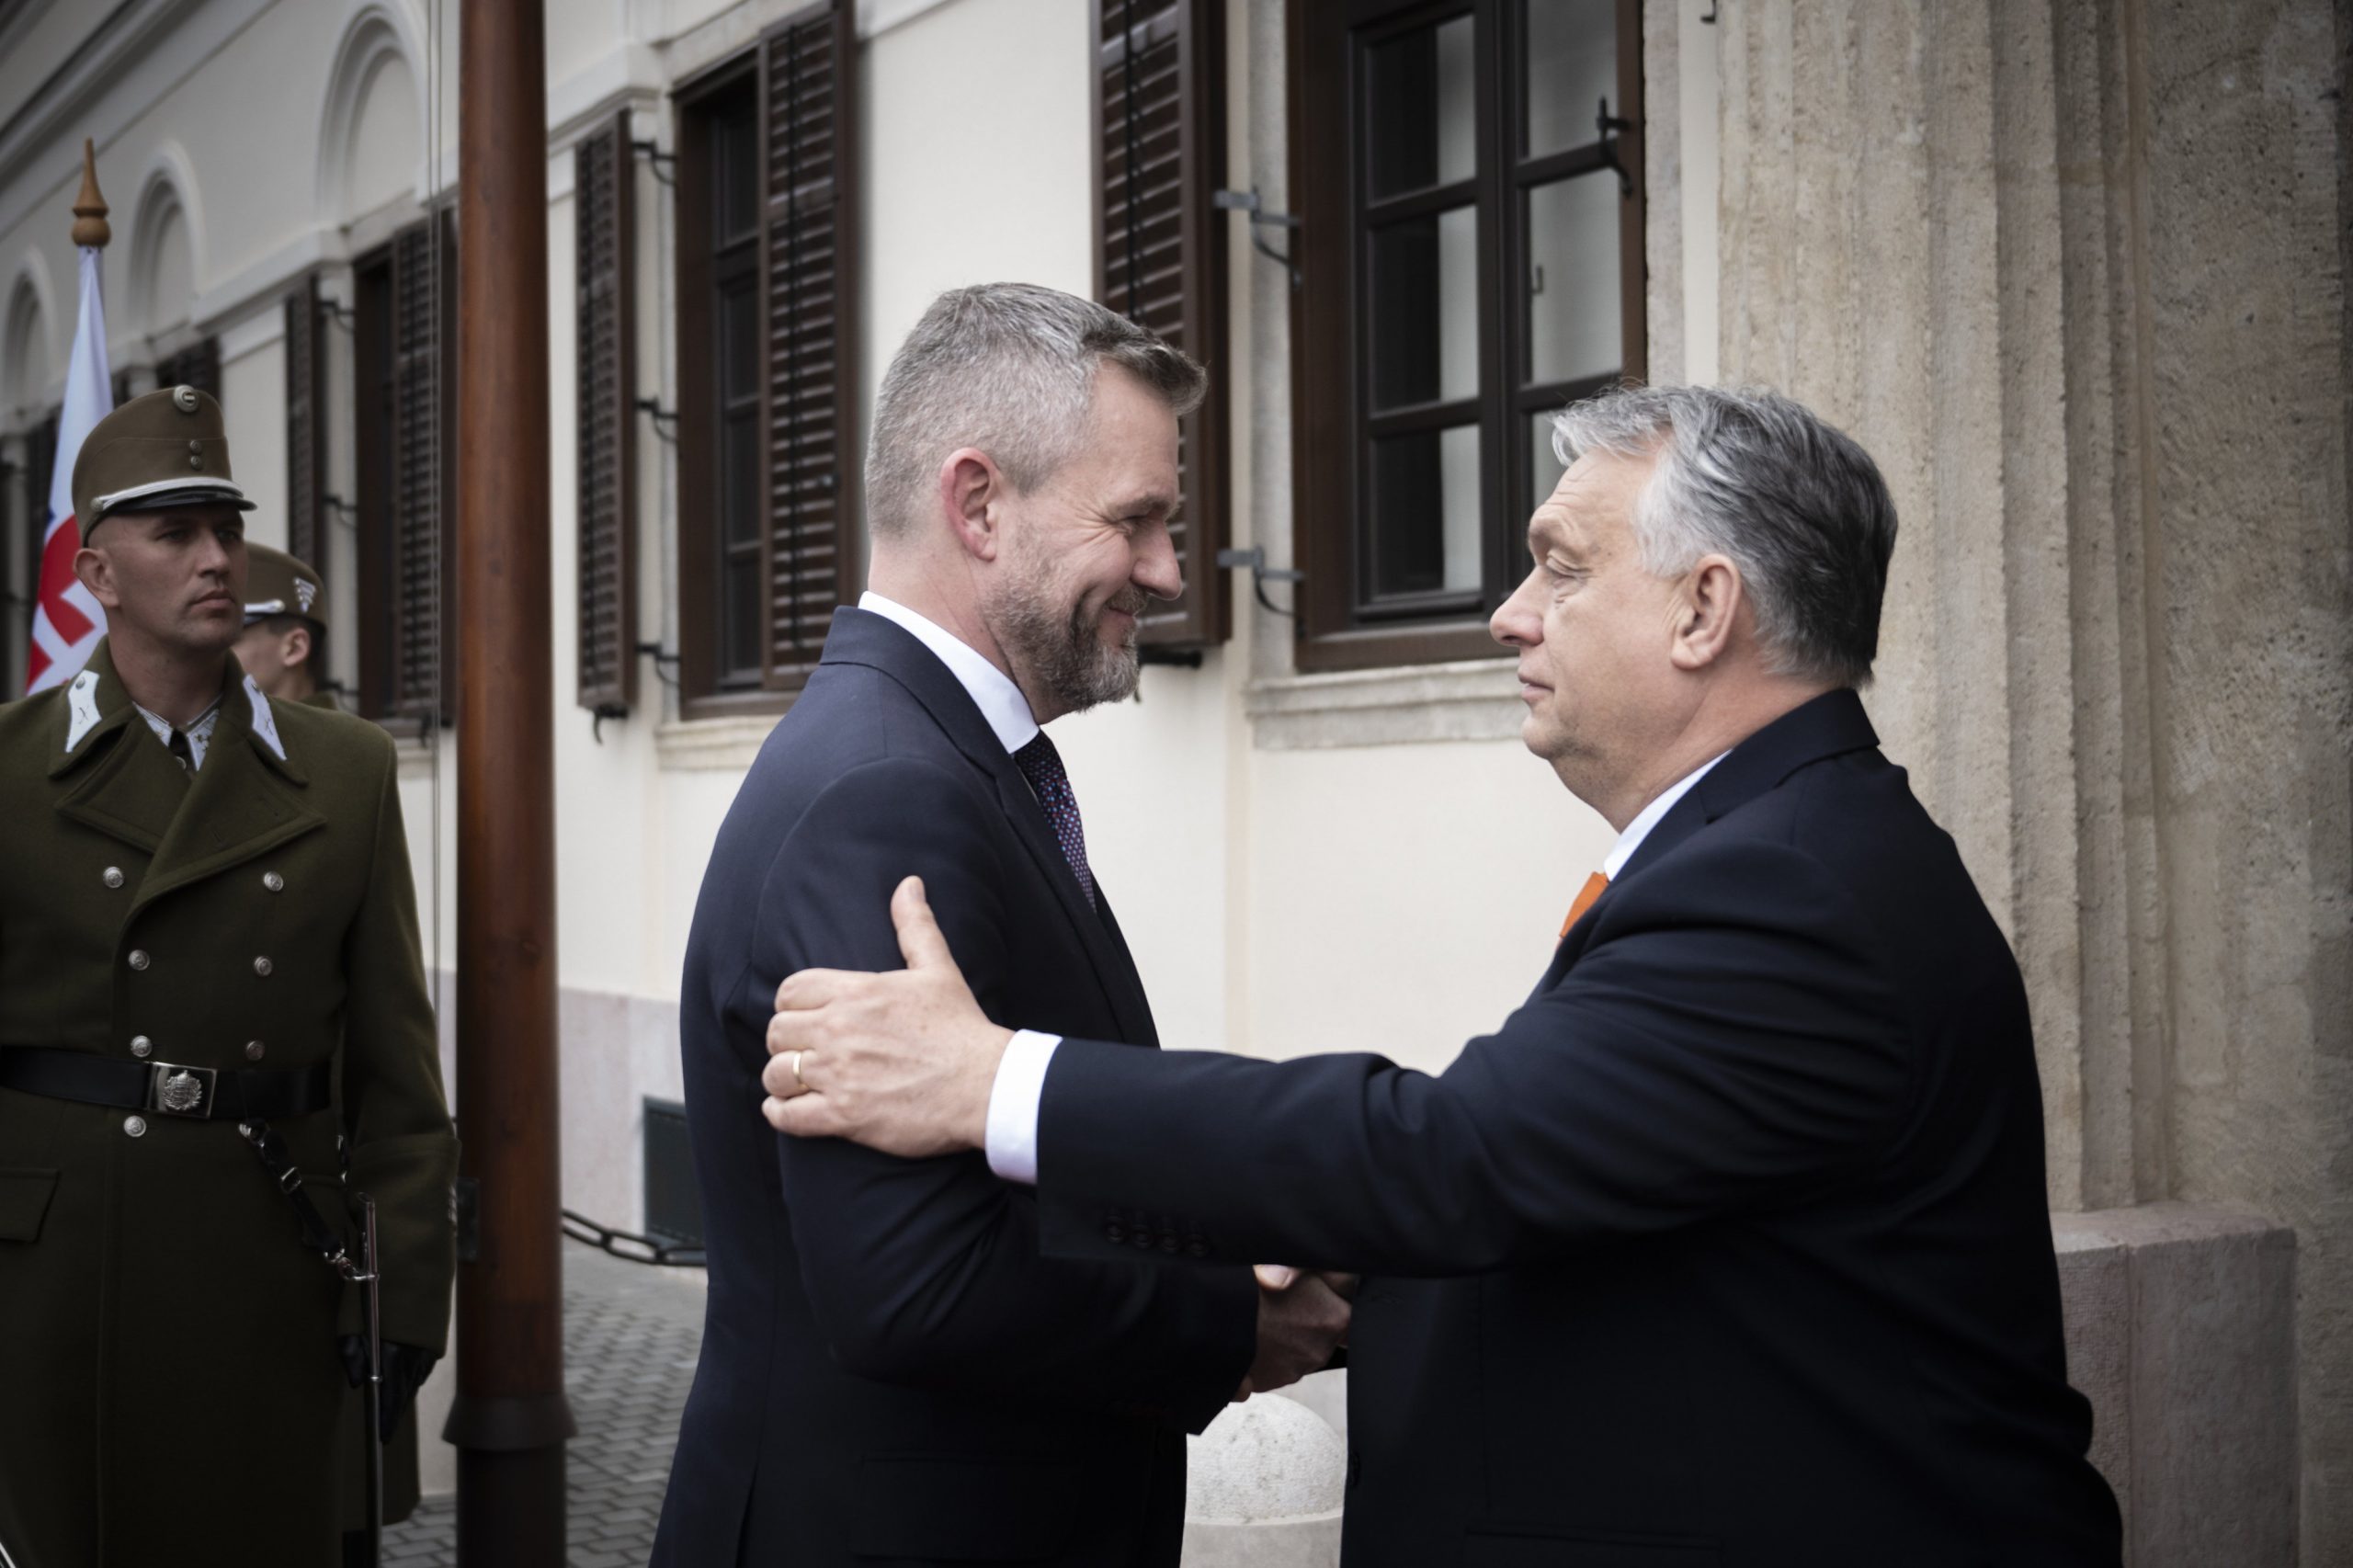 Viktor Orbán spricht mit slowakischem Parlamentspräsidenten über gutnachbarschaftliche Beziehungen